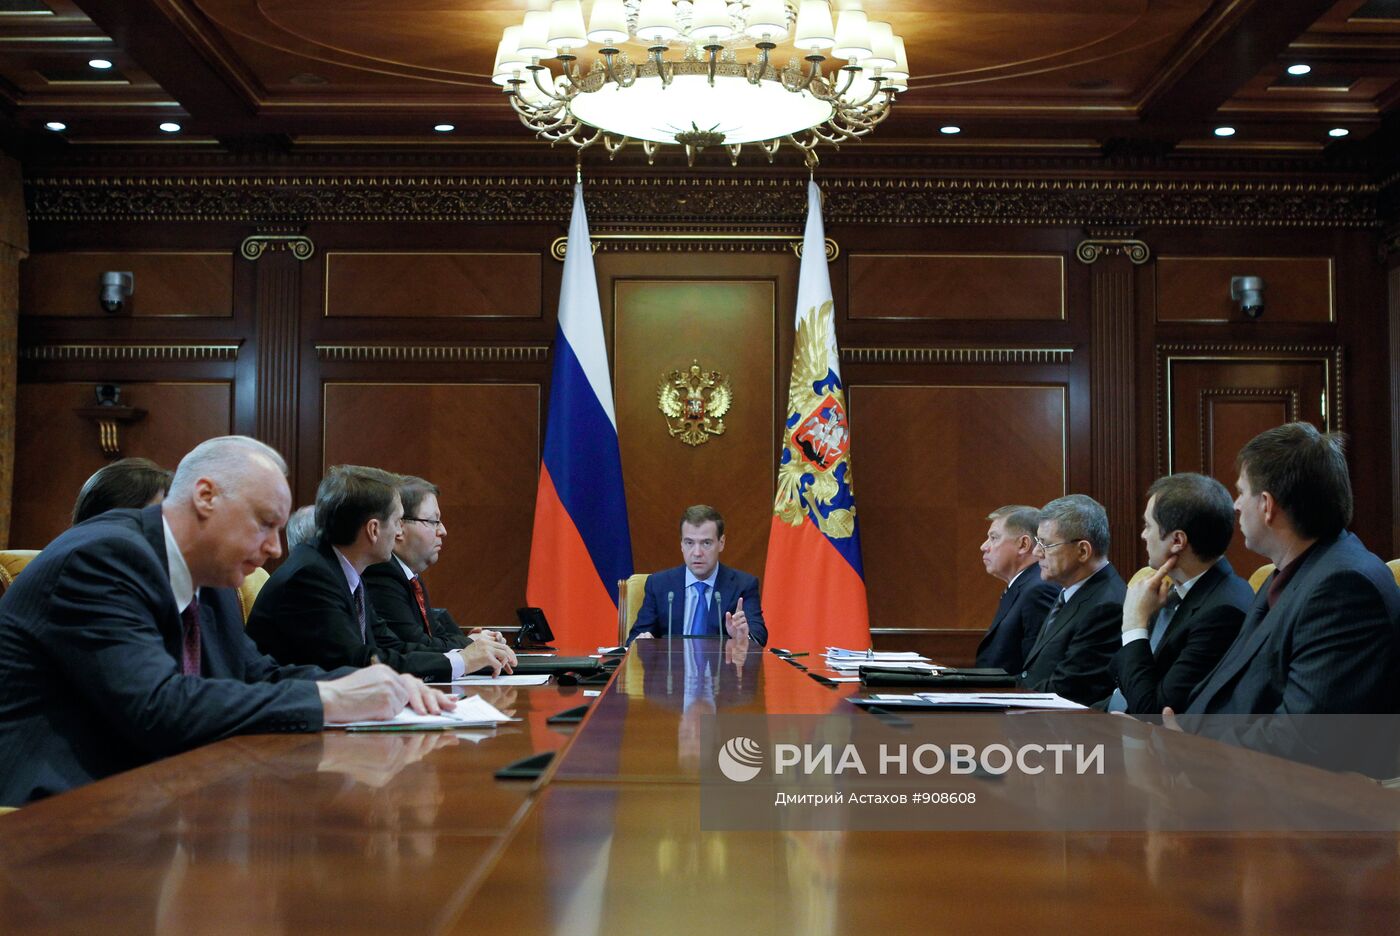 Дмитрий Медведев проводит совещание по вопросам судебной системы